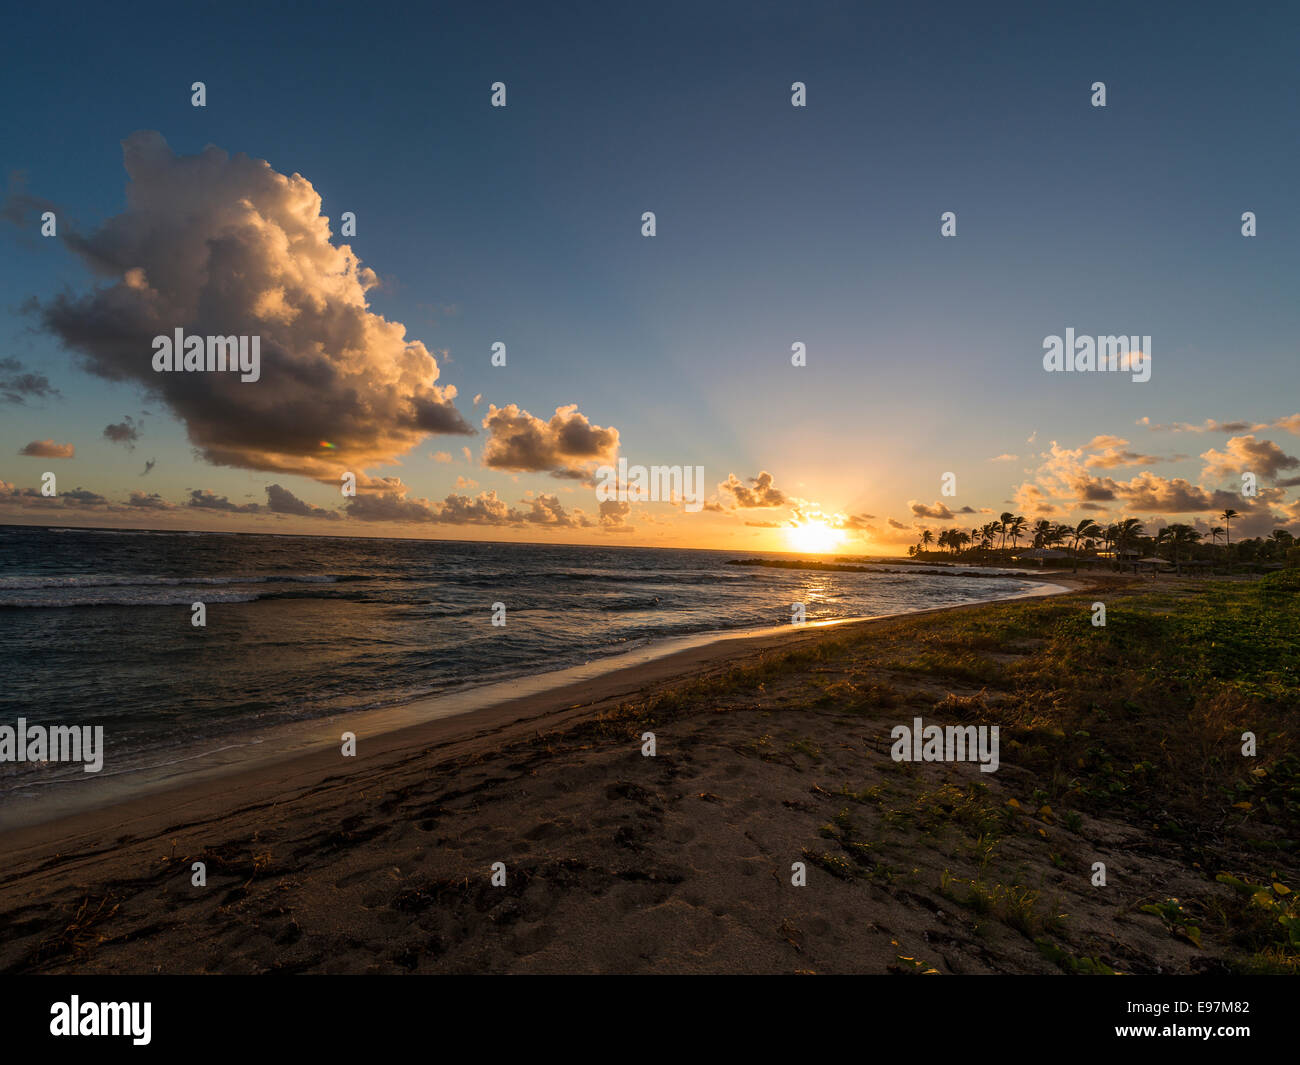 Paesaggio - il sorgere del sole dietro una nuvola la formazione in background con Long Haul Bay Beach e il mare dei Caraibi in primo piano. Foto Stock